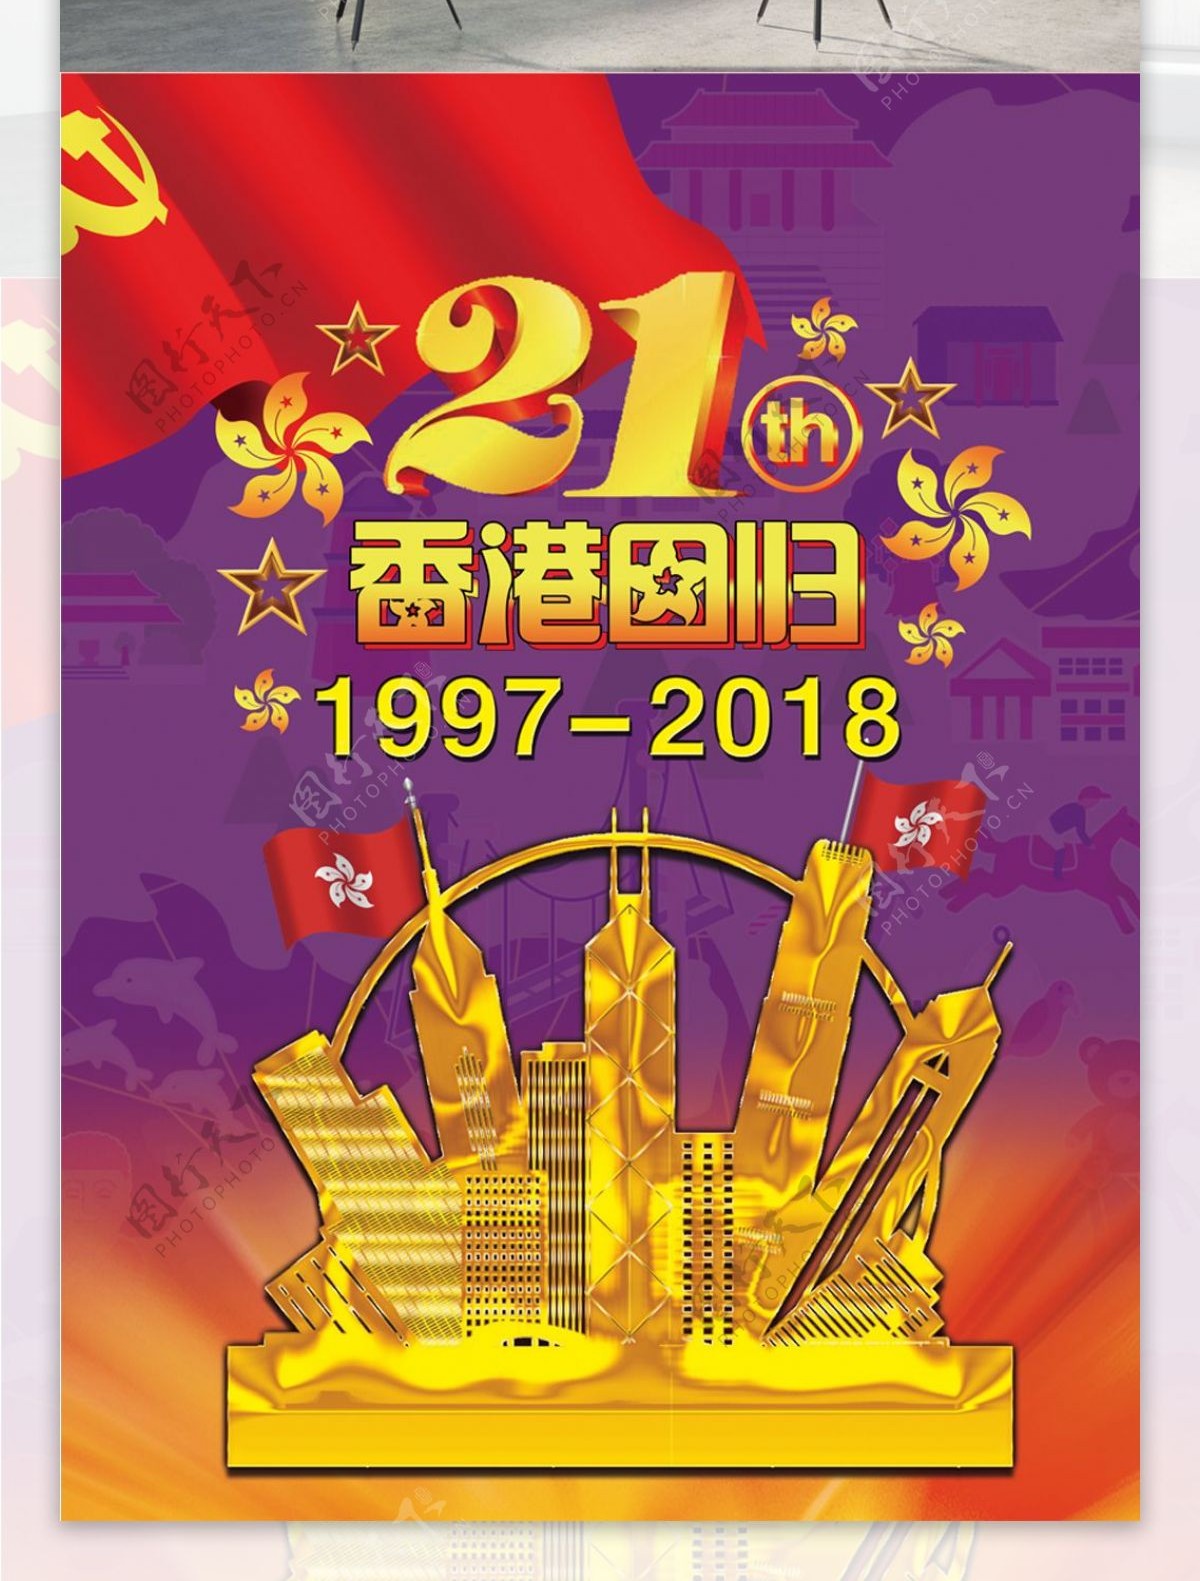 香港回归21周年地图紫色底红旗金色建筑